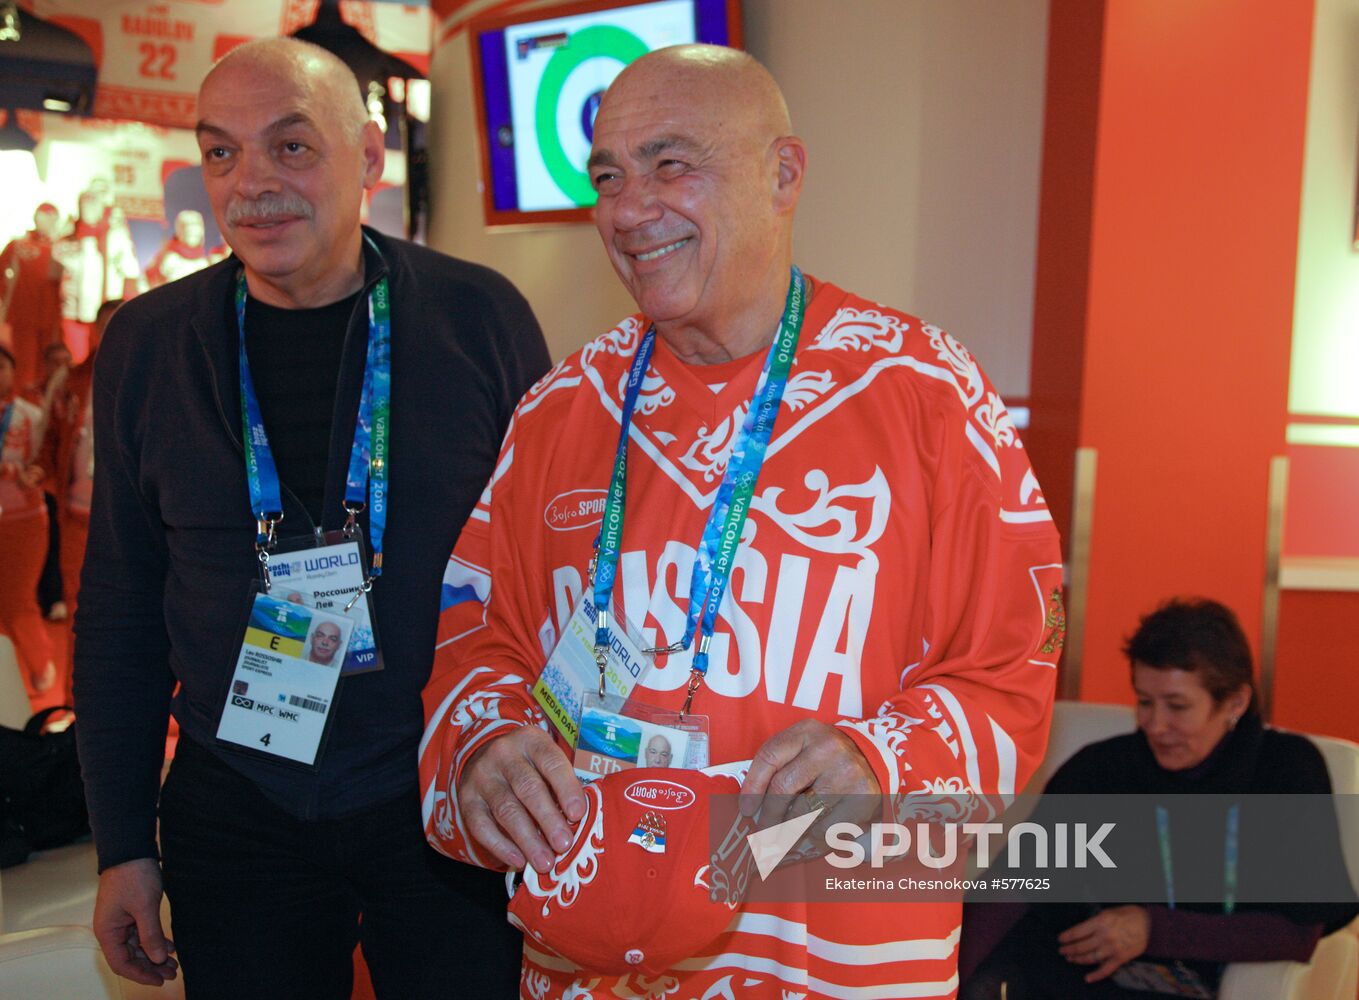 Vladimir Pozner and Lev Rossoshik